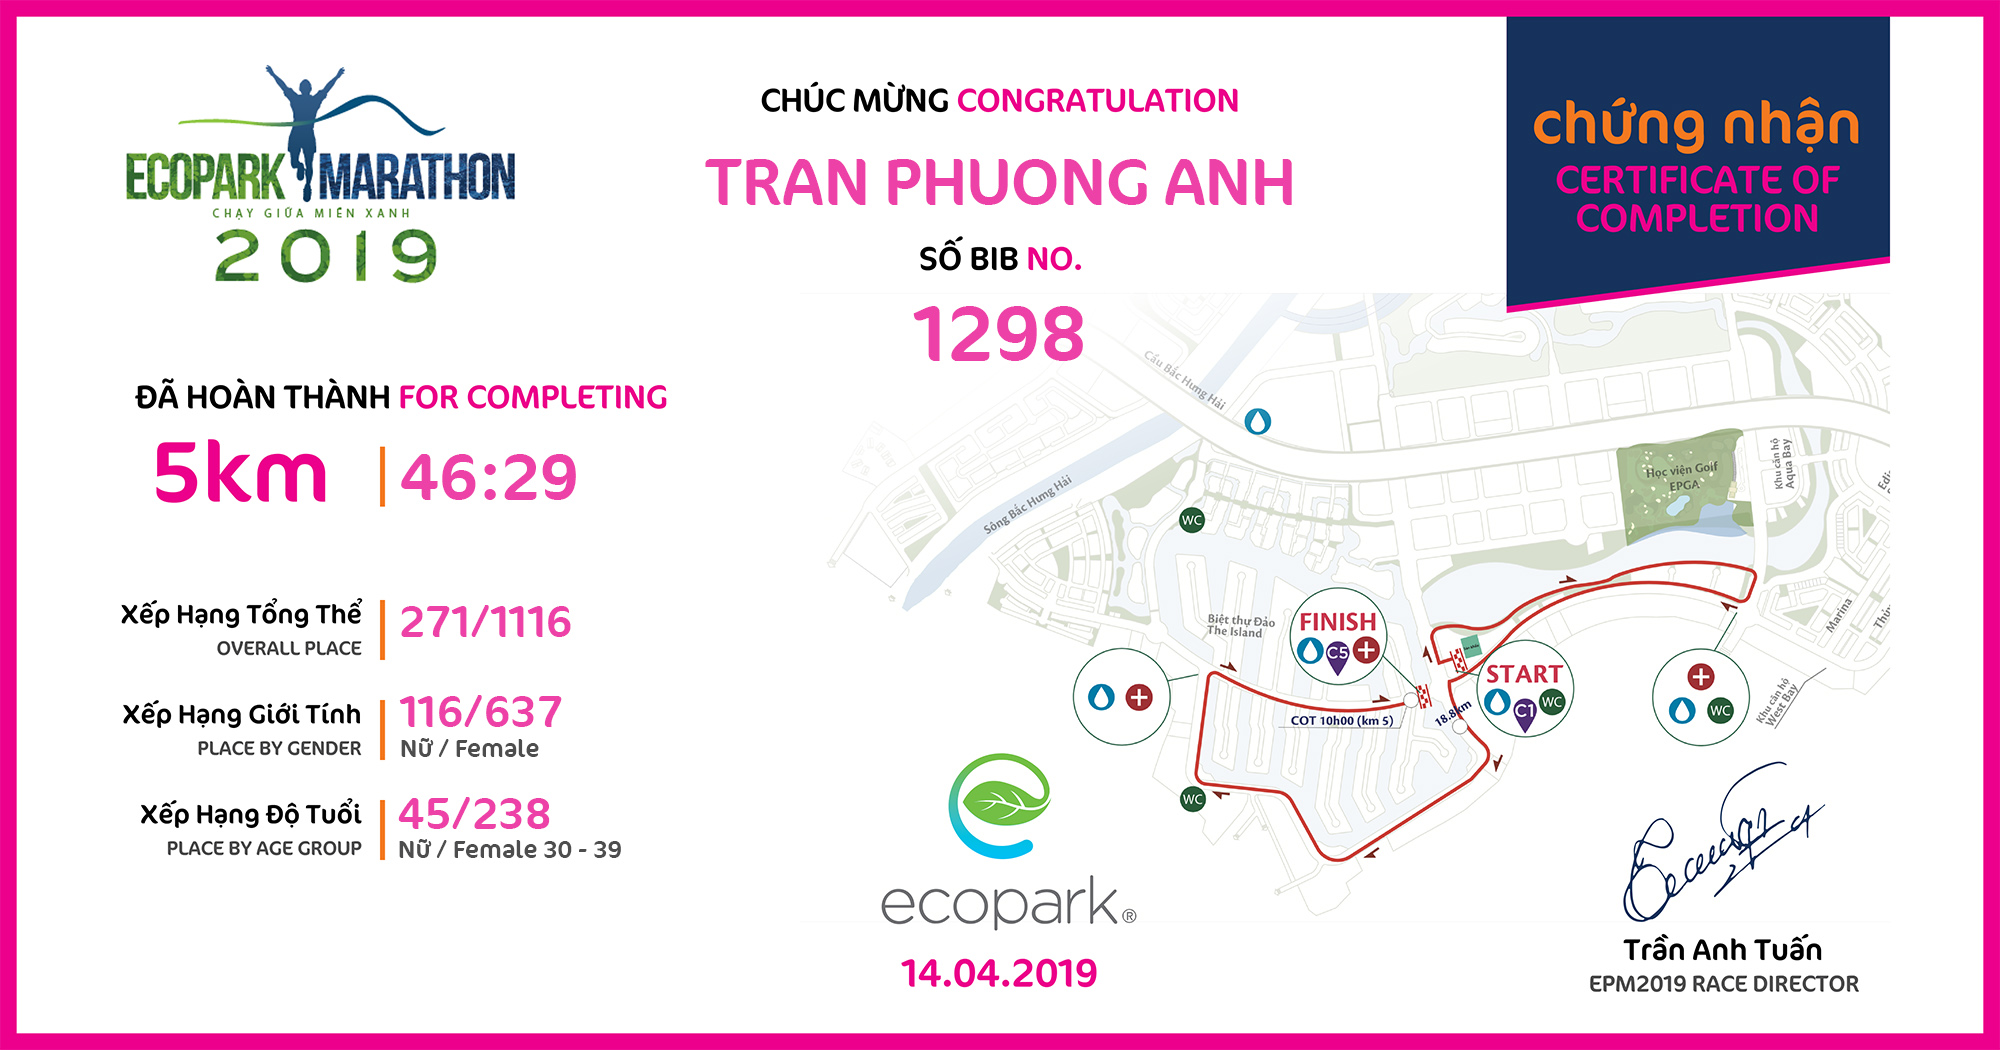 1298 - Tran Phuong Anh